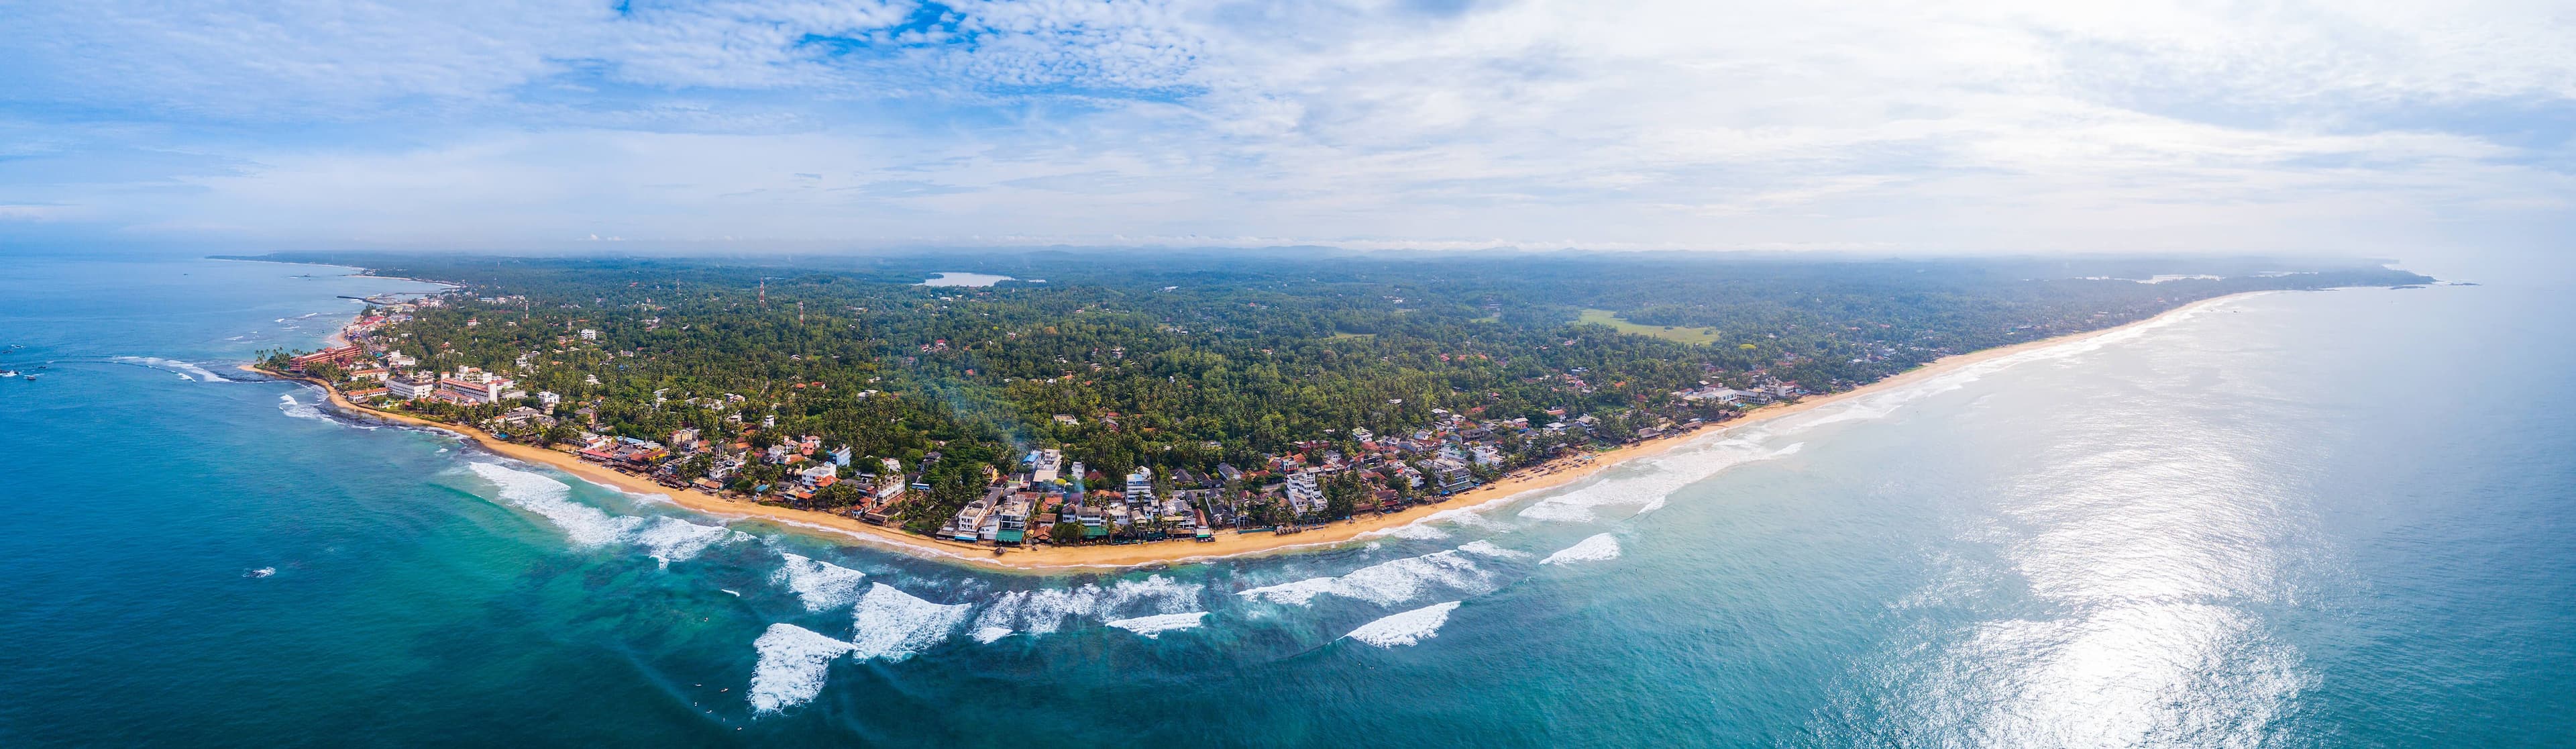 斯里兰卡 Hikkaduwa 镇及其海滩的鸟瞰图。